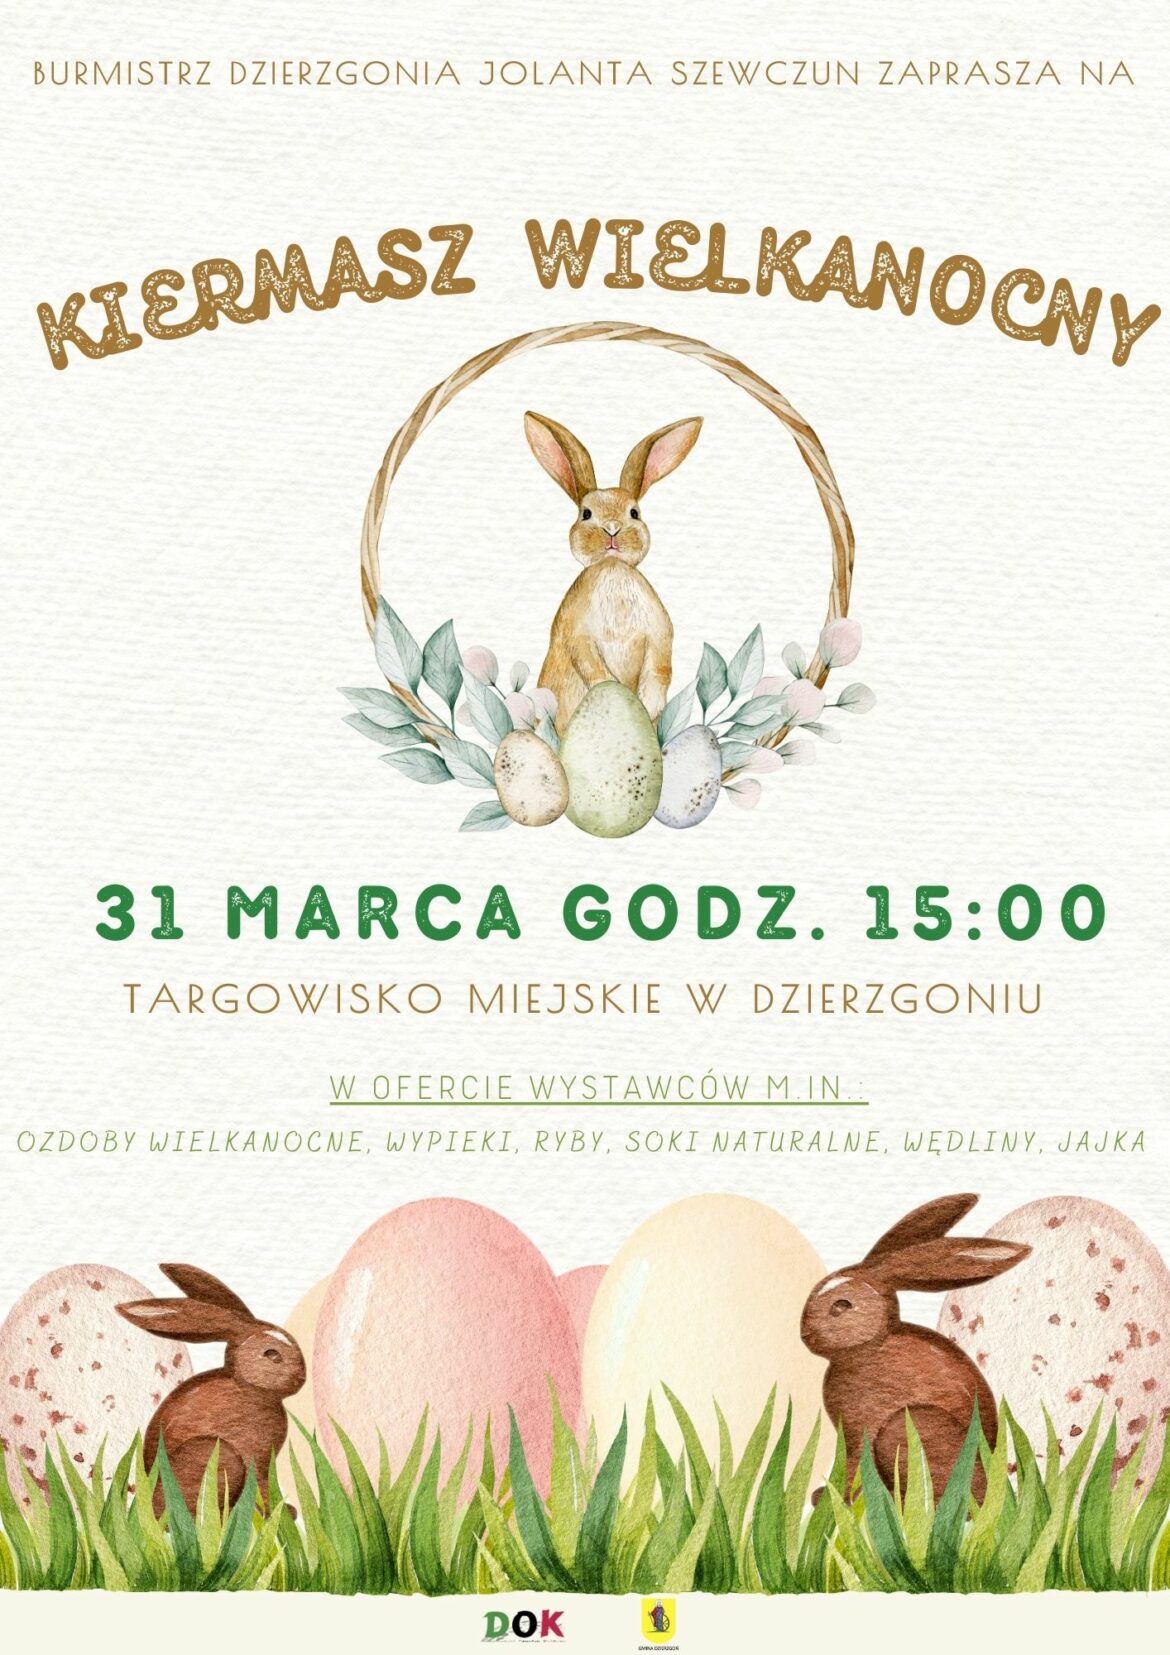 Dzierzgoński Ośrodek Kultury zaprasza na Kiermasz Wielkanocny.